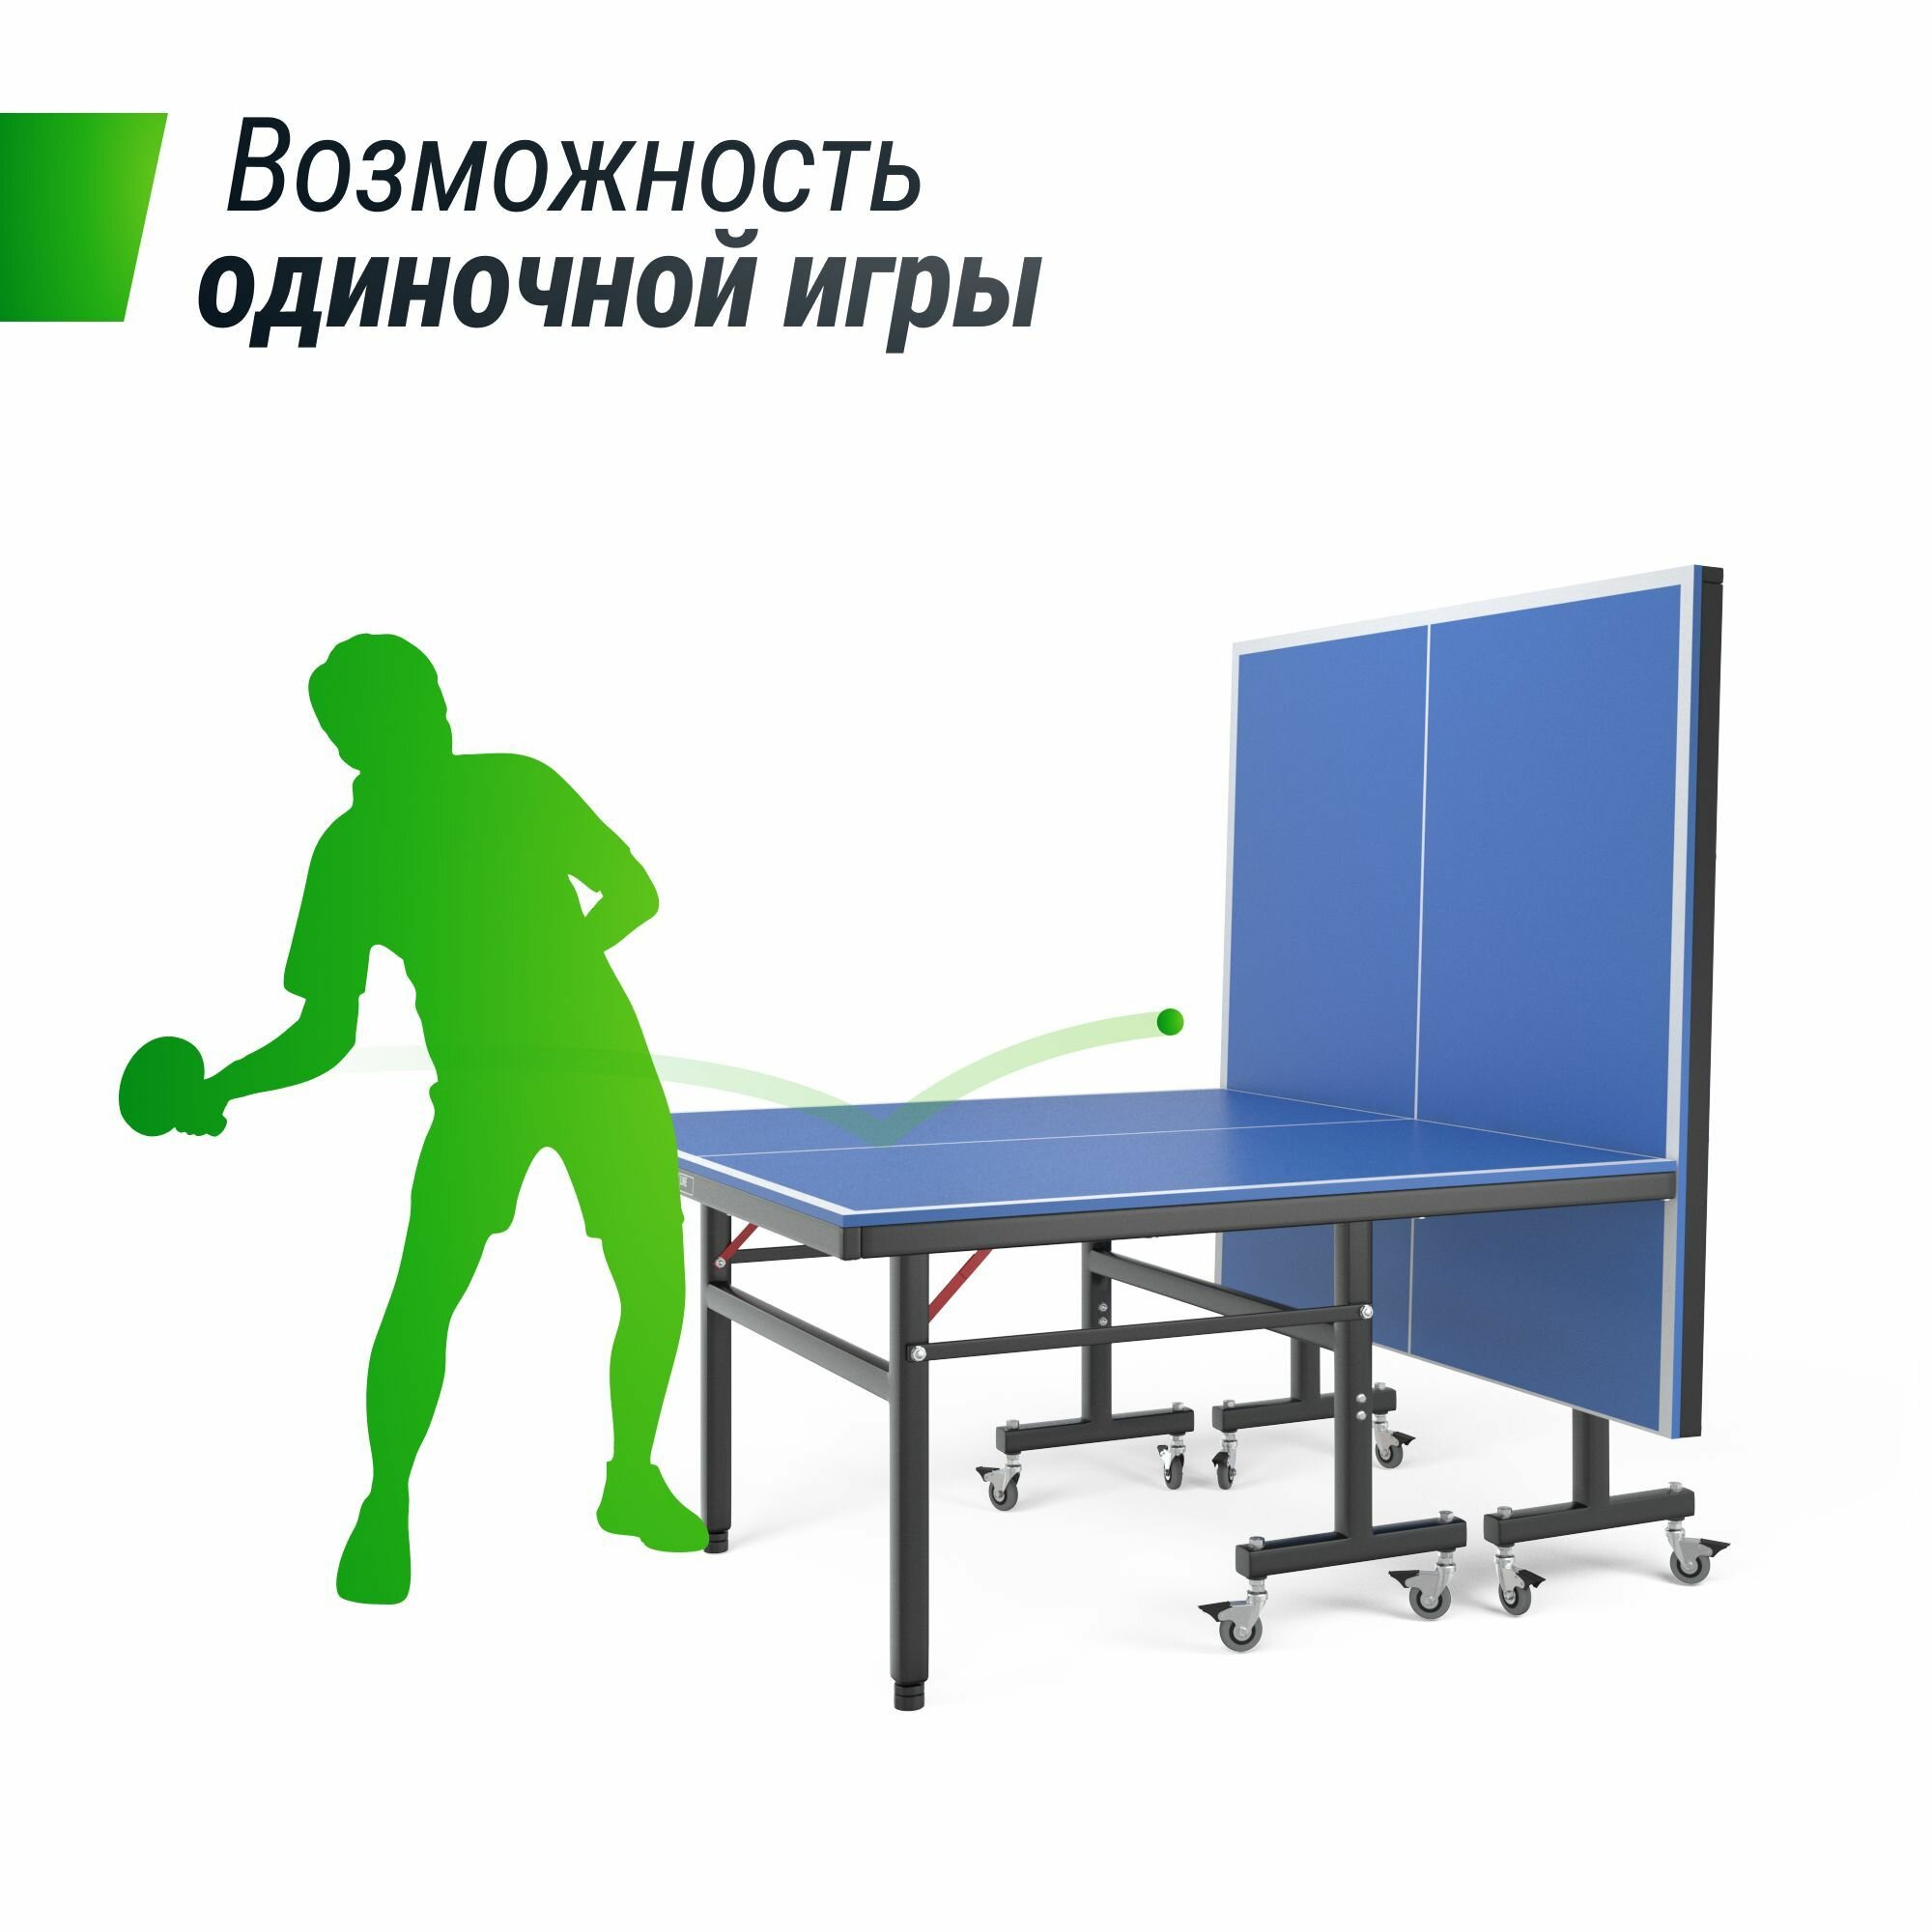 Теннисный стол складной всепогодный для игры в настольный теннис UNIX Line outdoor 14 mm SMC (Blue) полупрофессиональный спортивный с антибликовым покрытием (сетка, 2 ракетки, 3 мяча) UNIXLINE